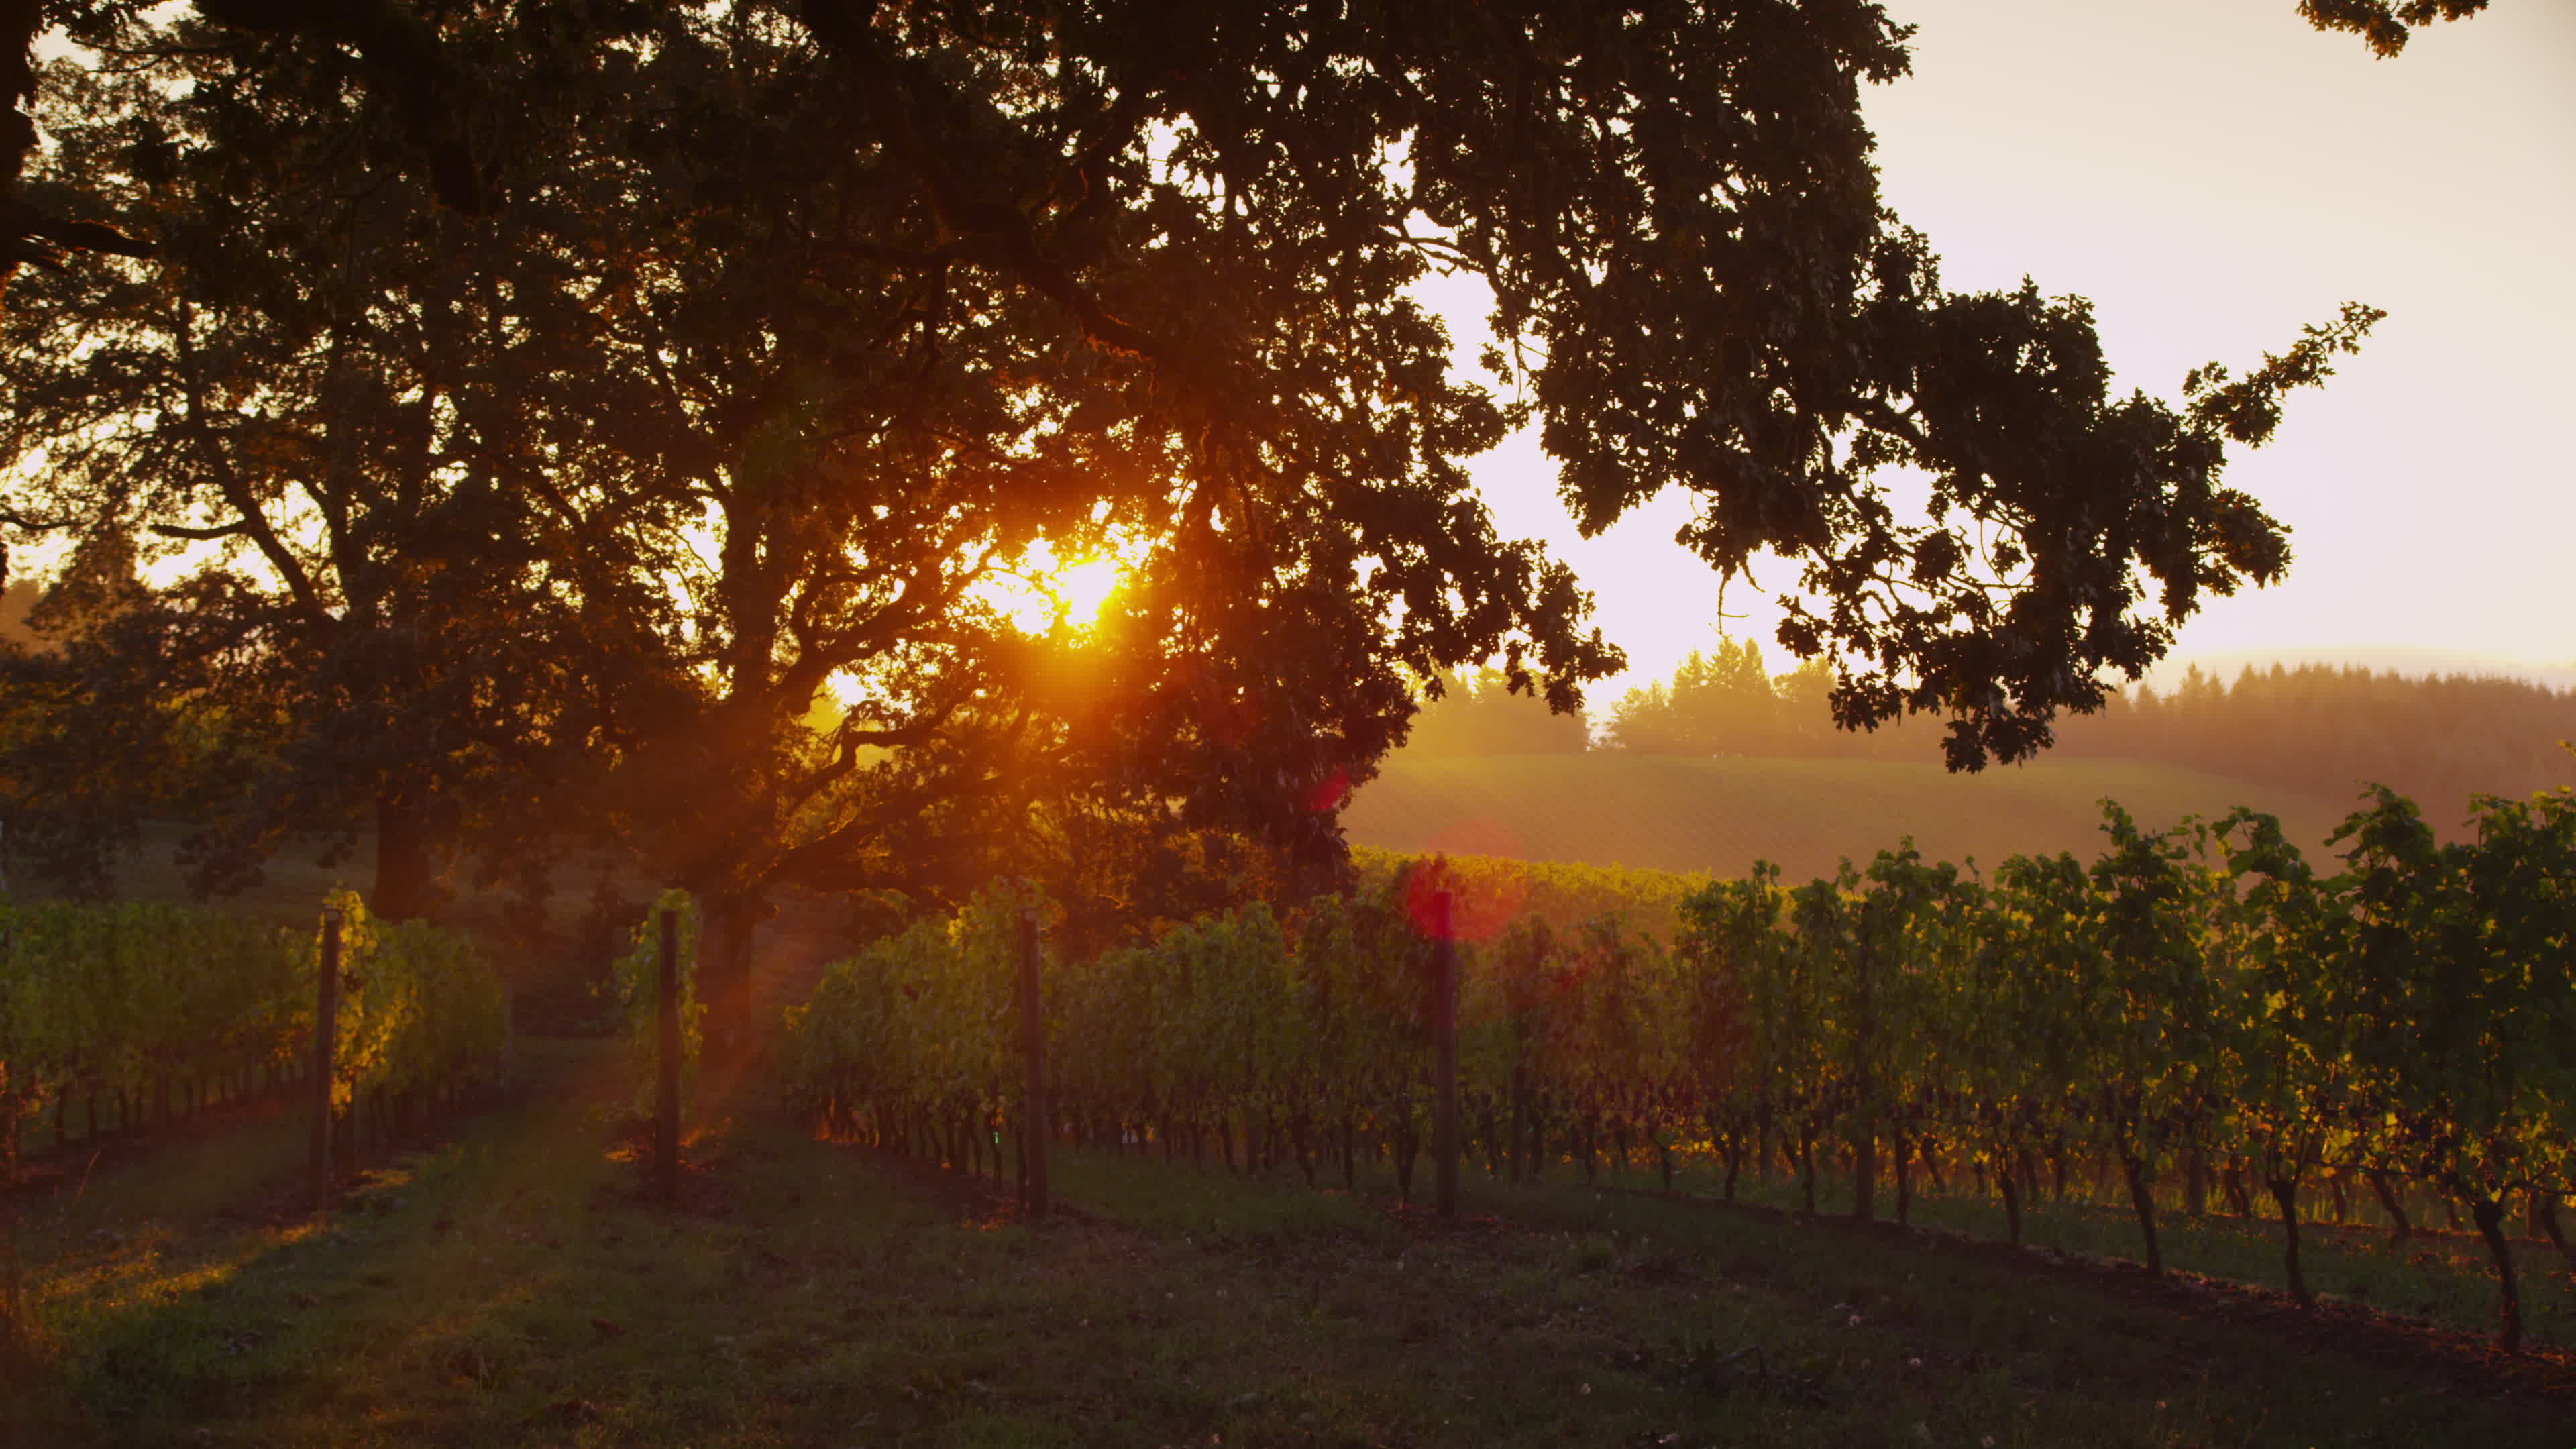 Sunlit oak tree in vineyard, Sunrise beauty, 4K UHD resolution, Serene ambiance, 3840x2160 4K Desktop